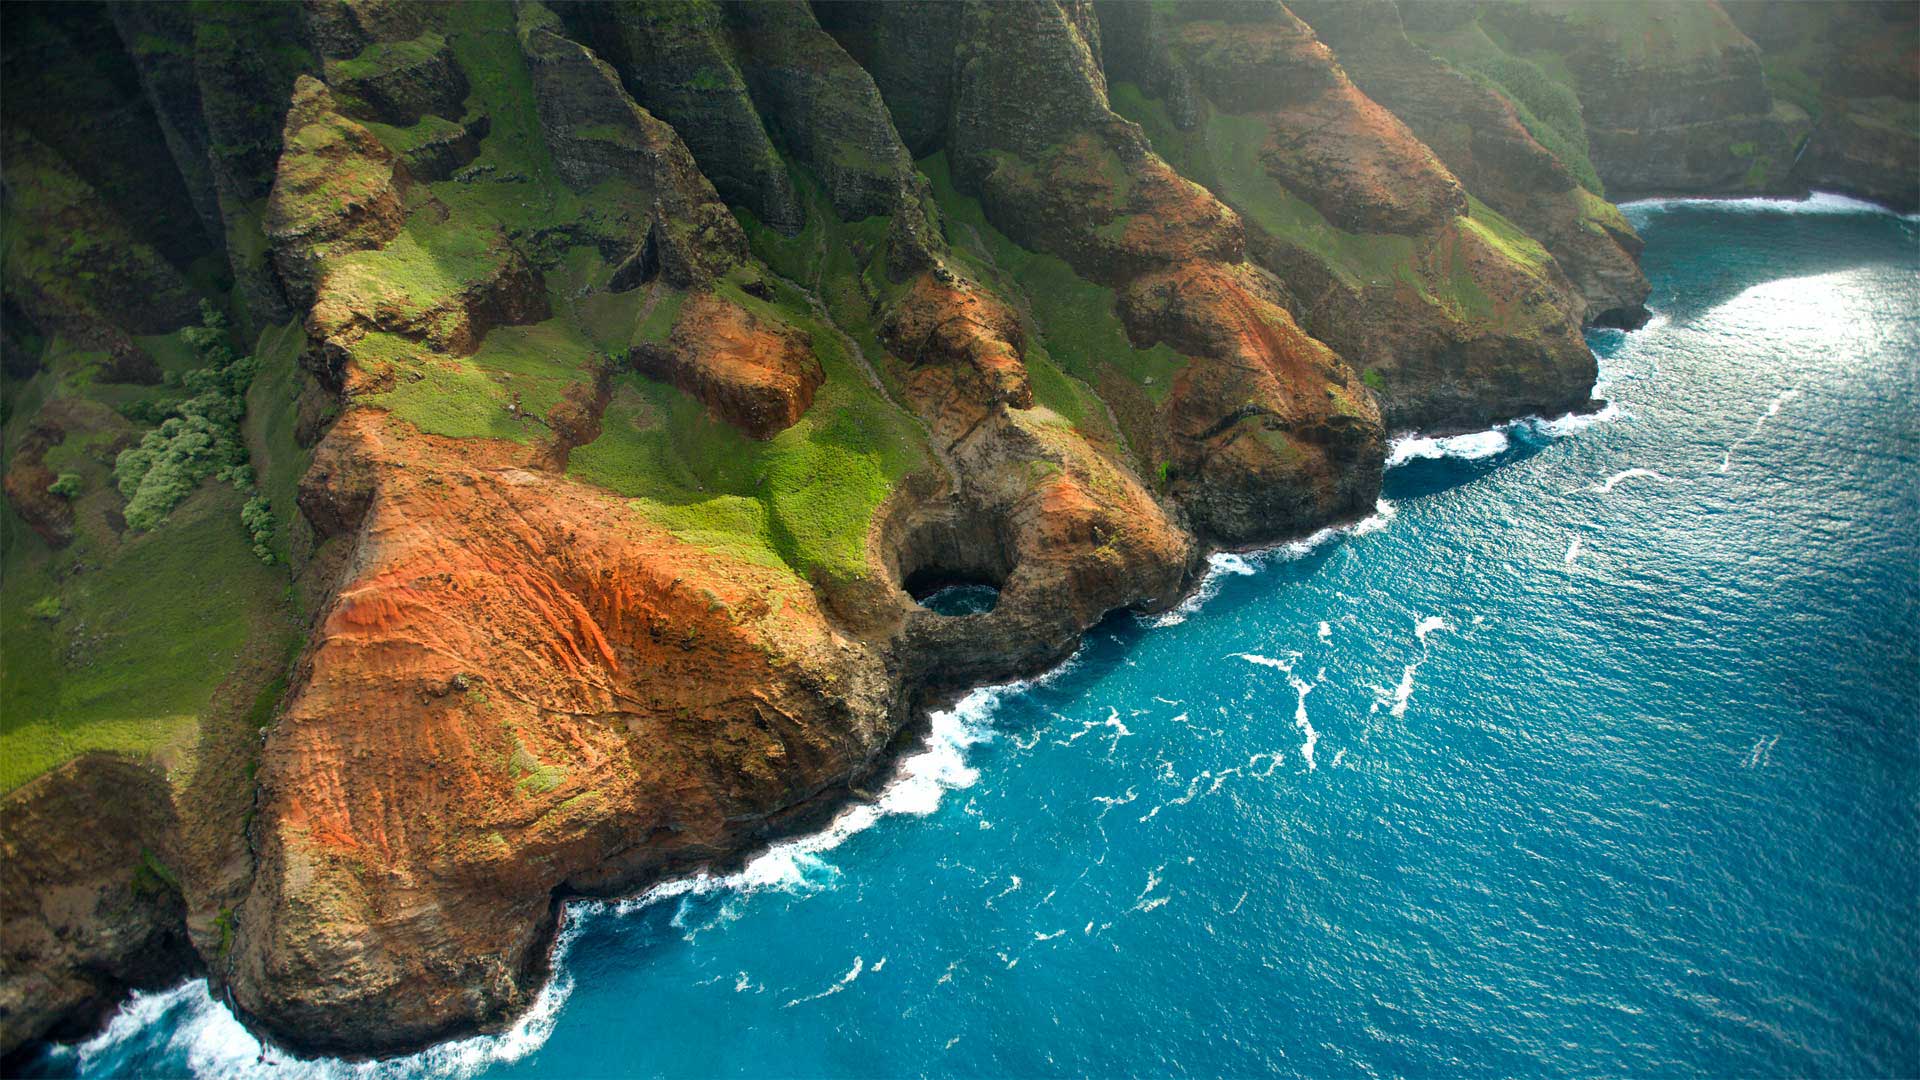 Bright Eye sea cave on the Nā Pali Coast, Kauai, Hawaii - jimkruger/Getty Images)